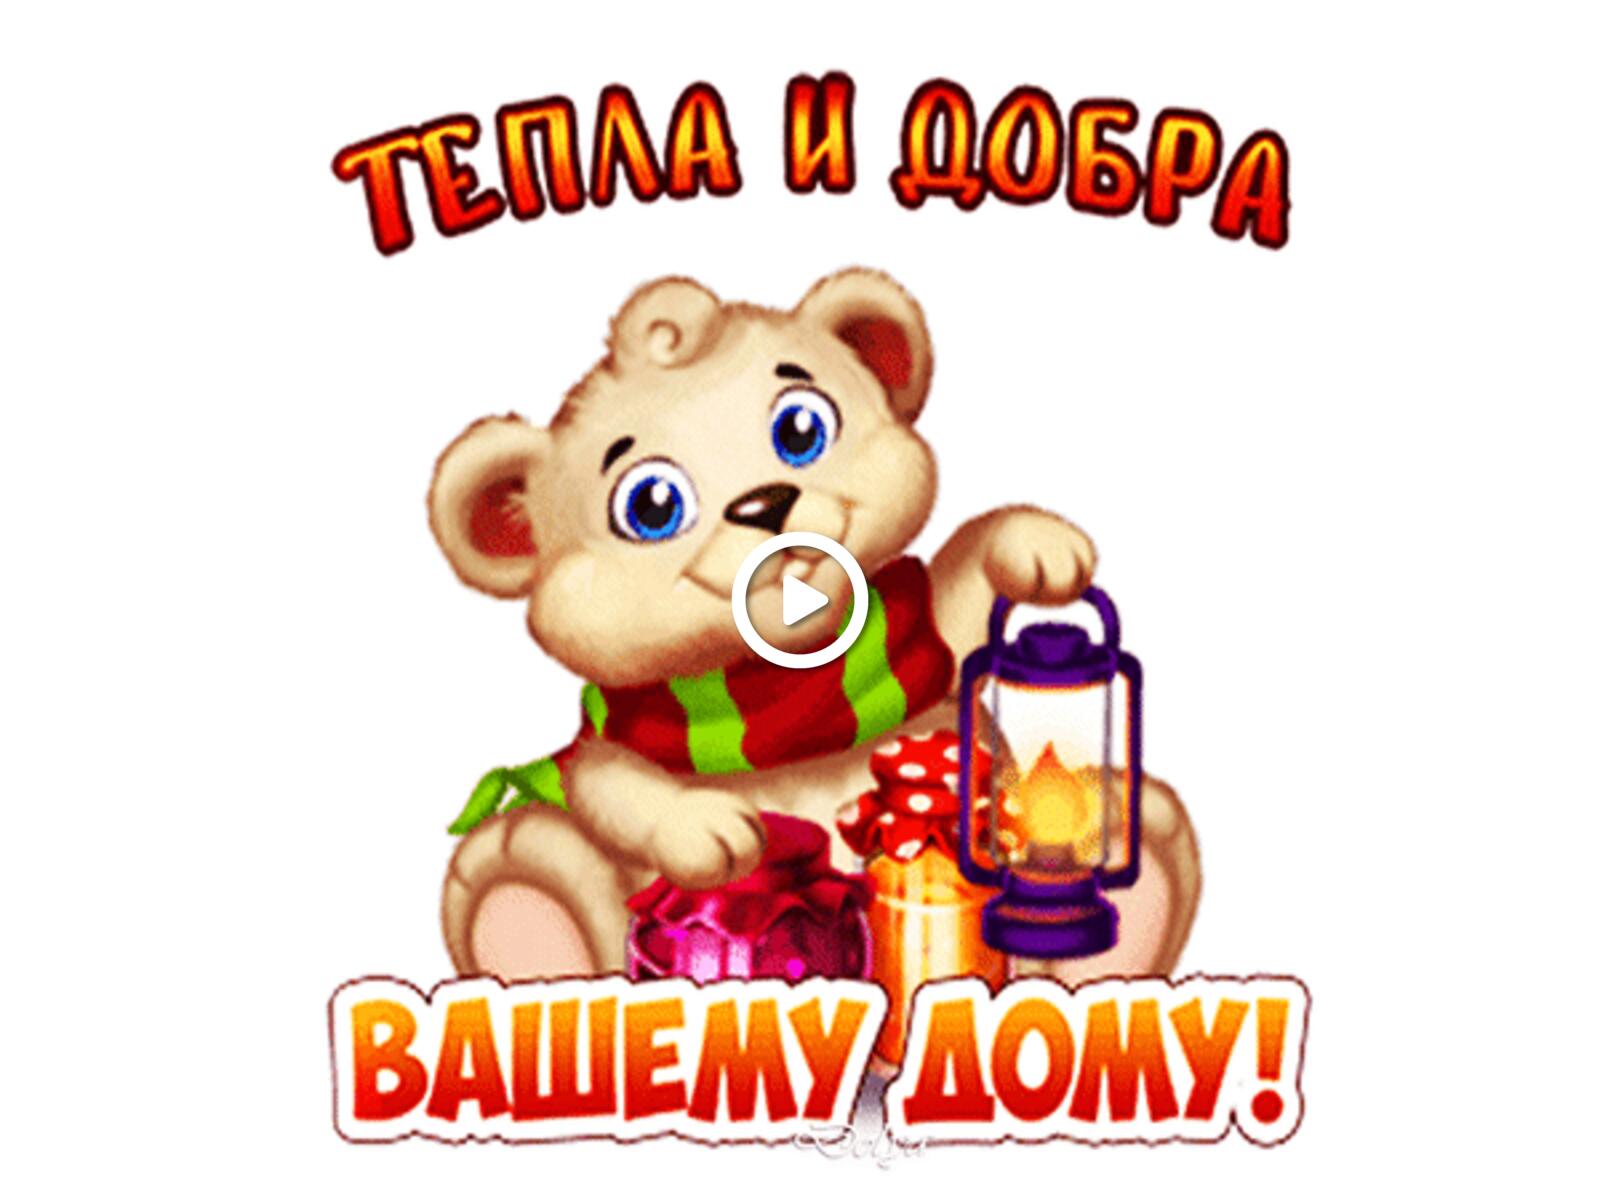 一张以善良日快乐 玩具熊 软玩具为主题的明信片